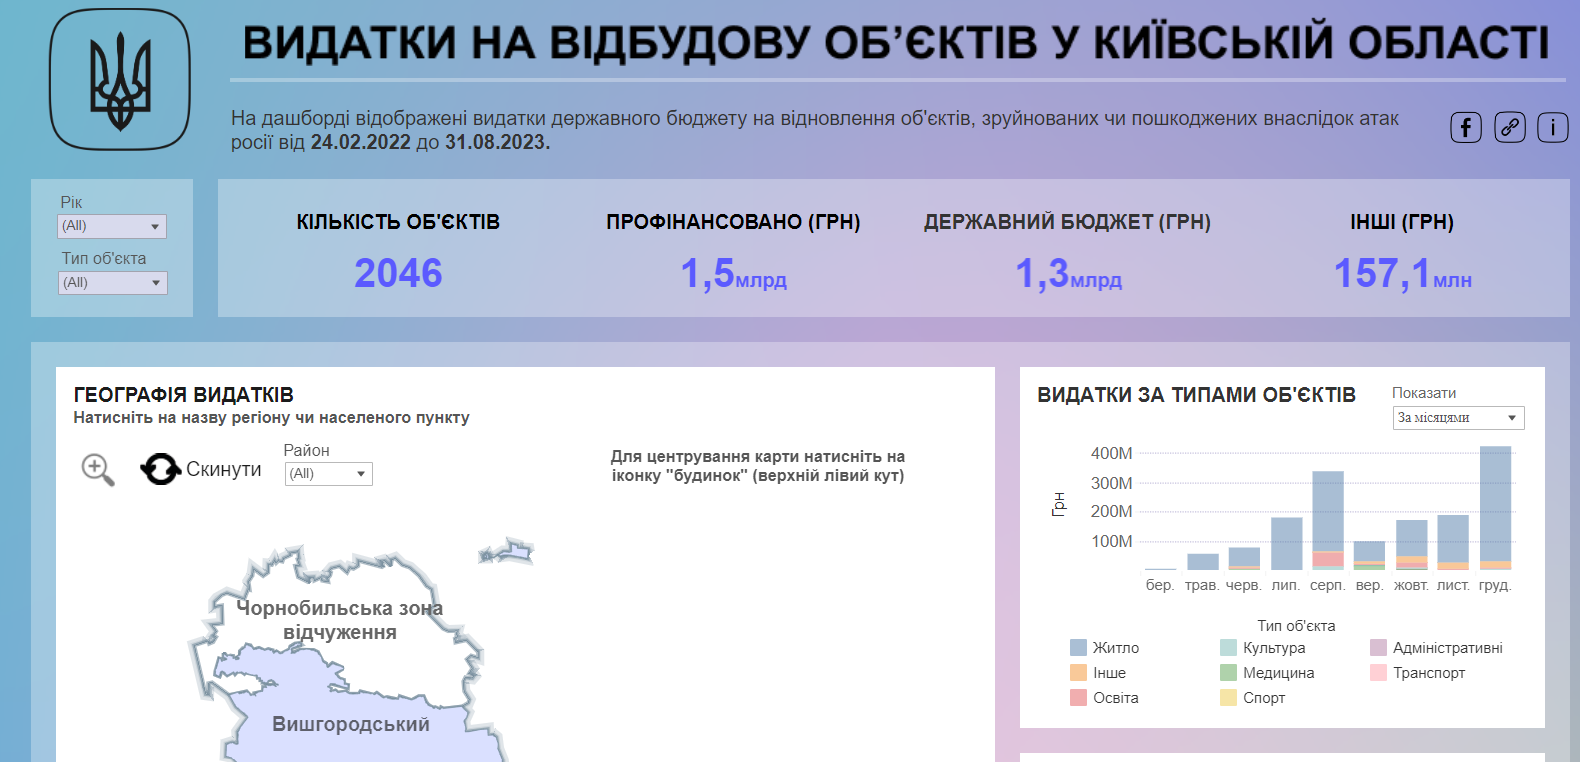 На Київщині запустили інтерактивну мапу відновлення з дашбордом видатків